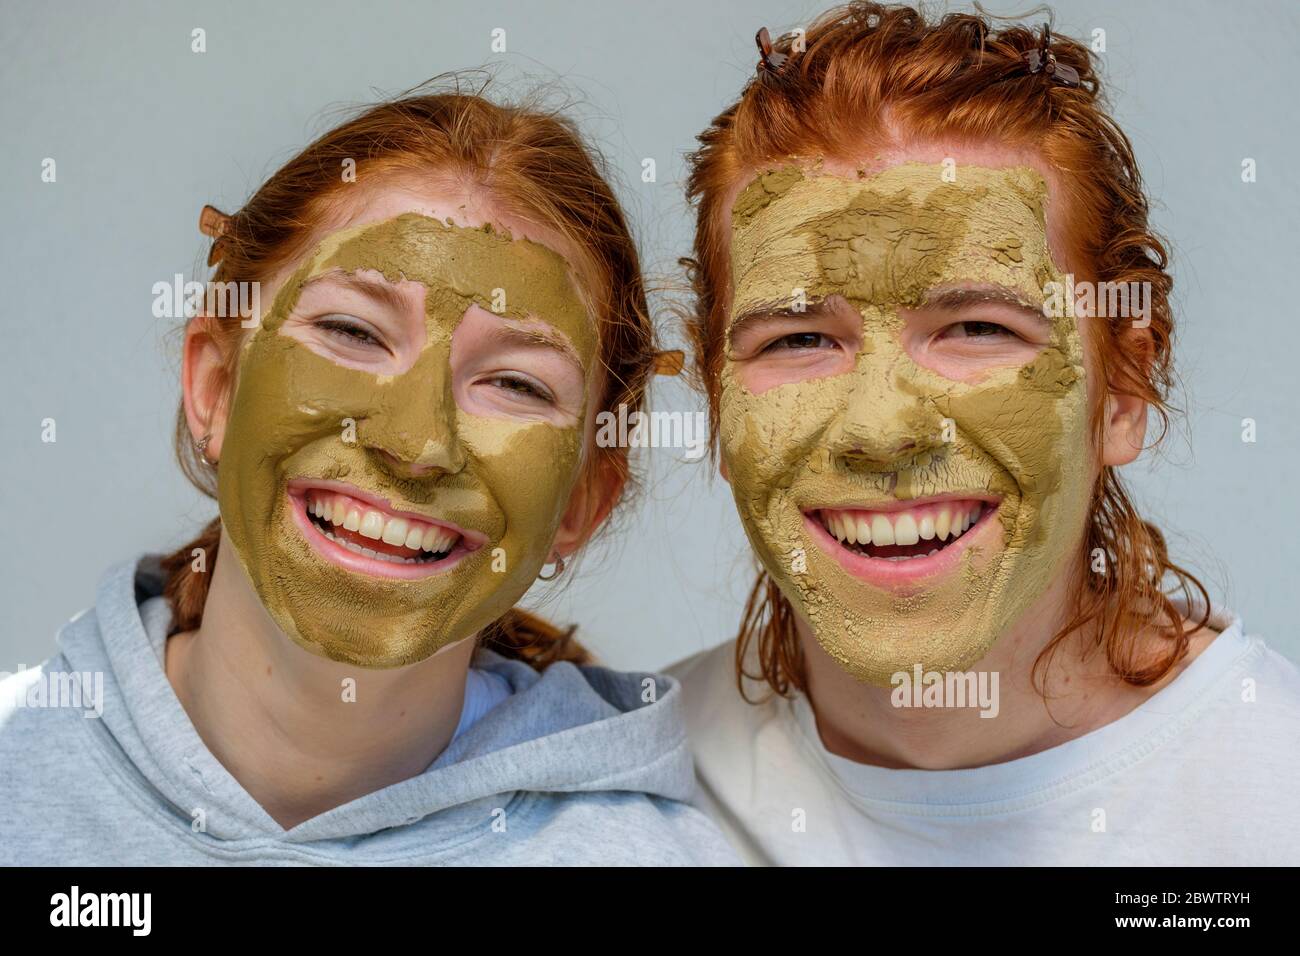 Portrait de frère et sœur riant avec masques faciaux Banque D'Images